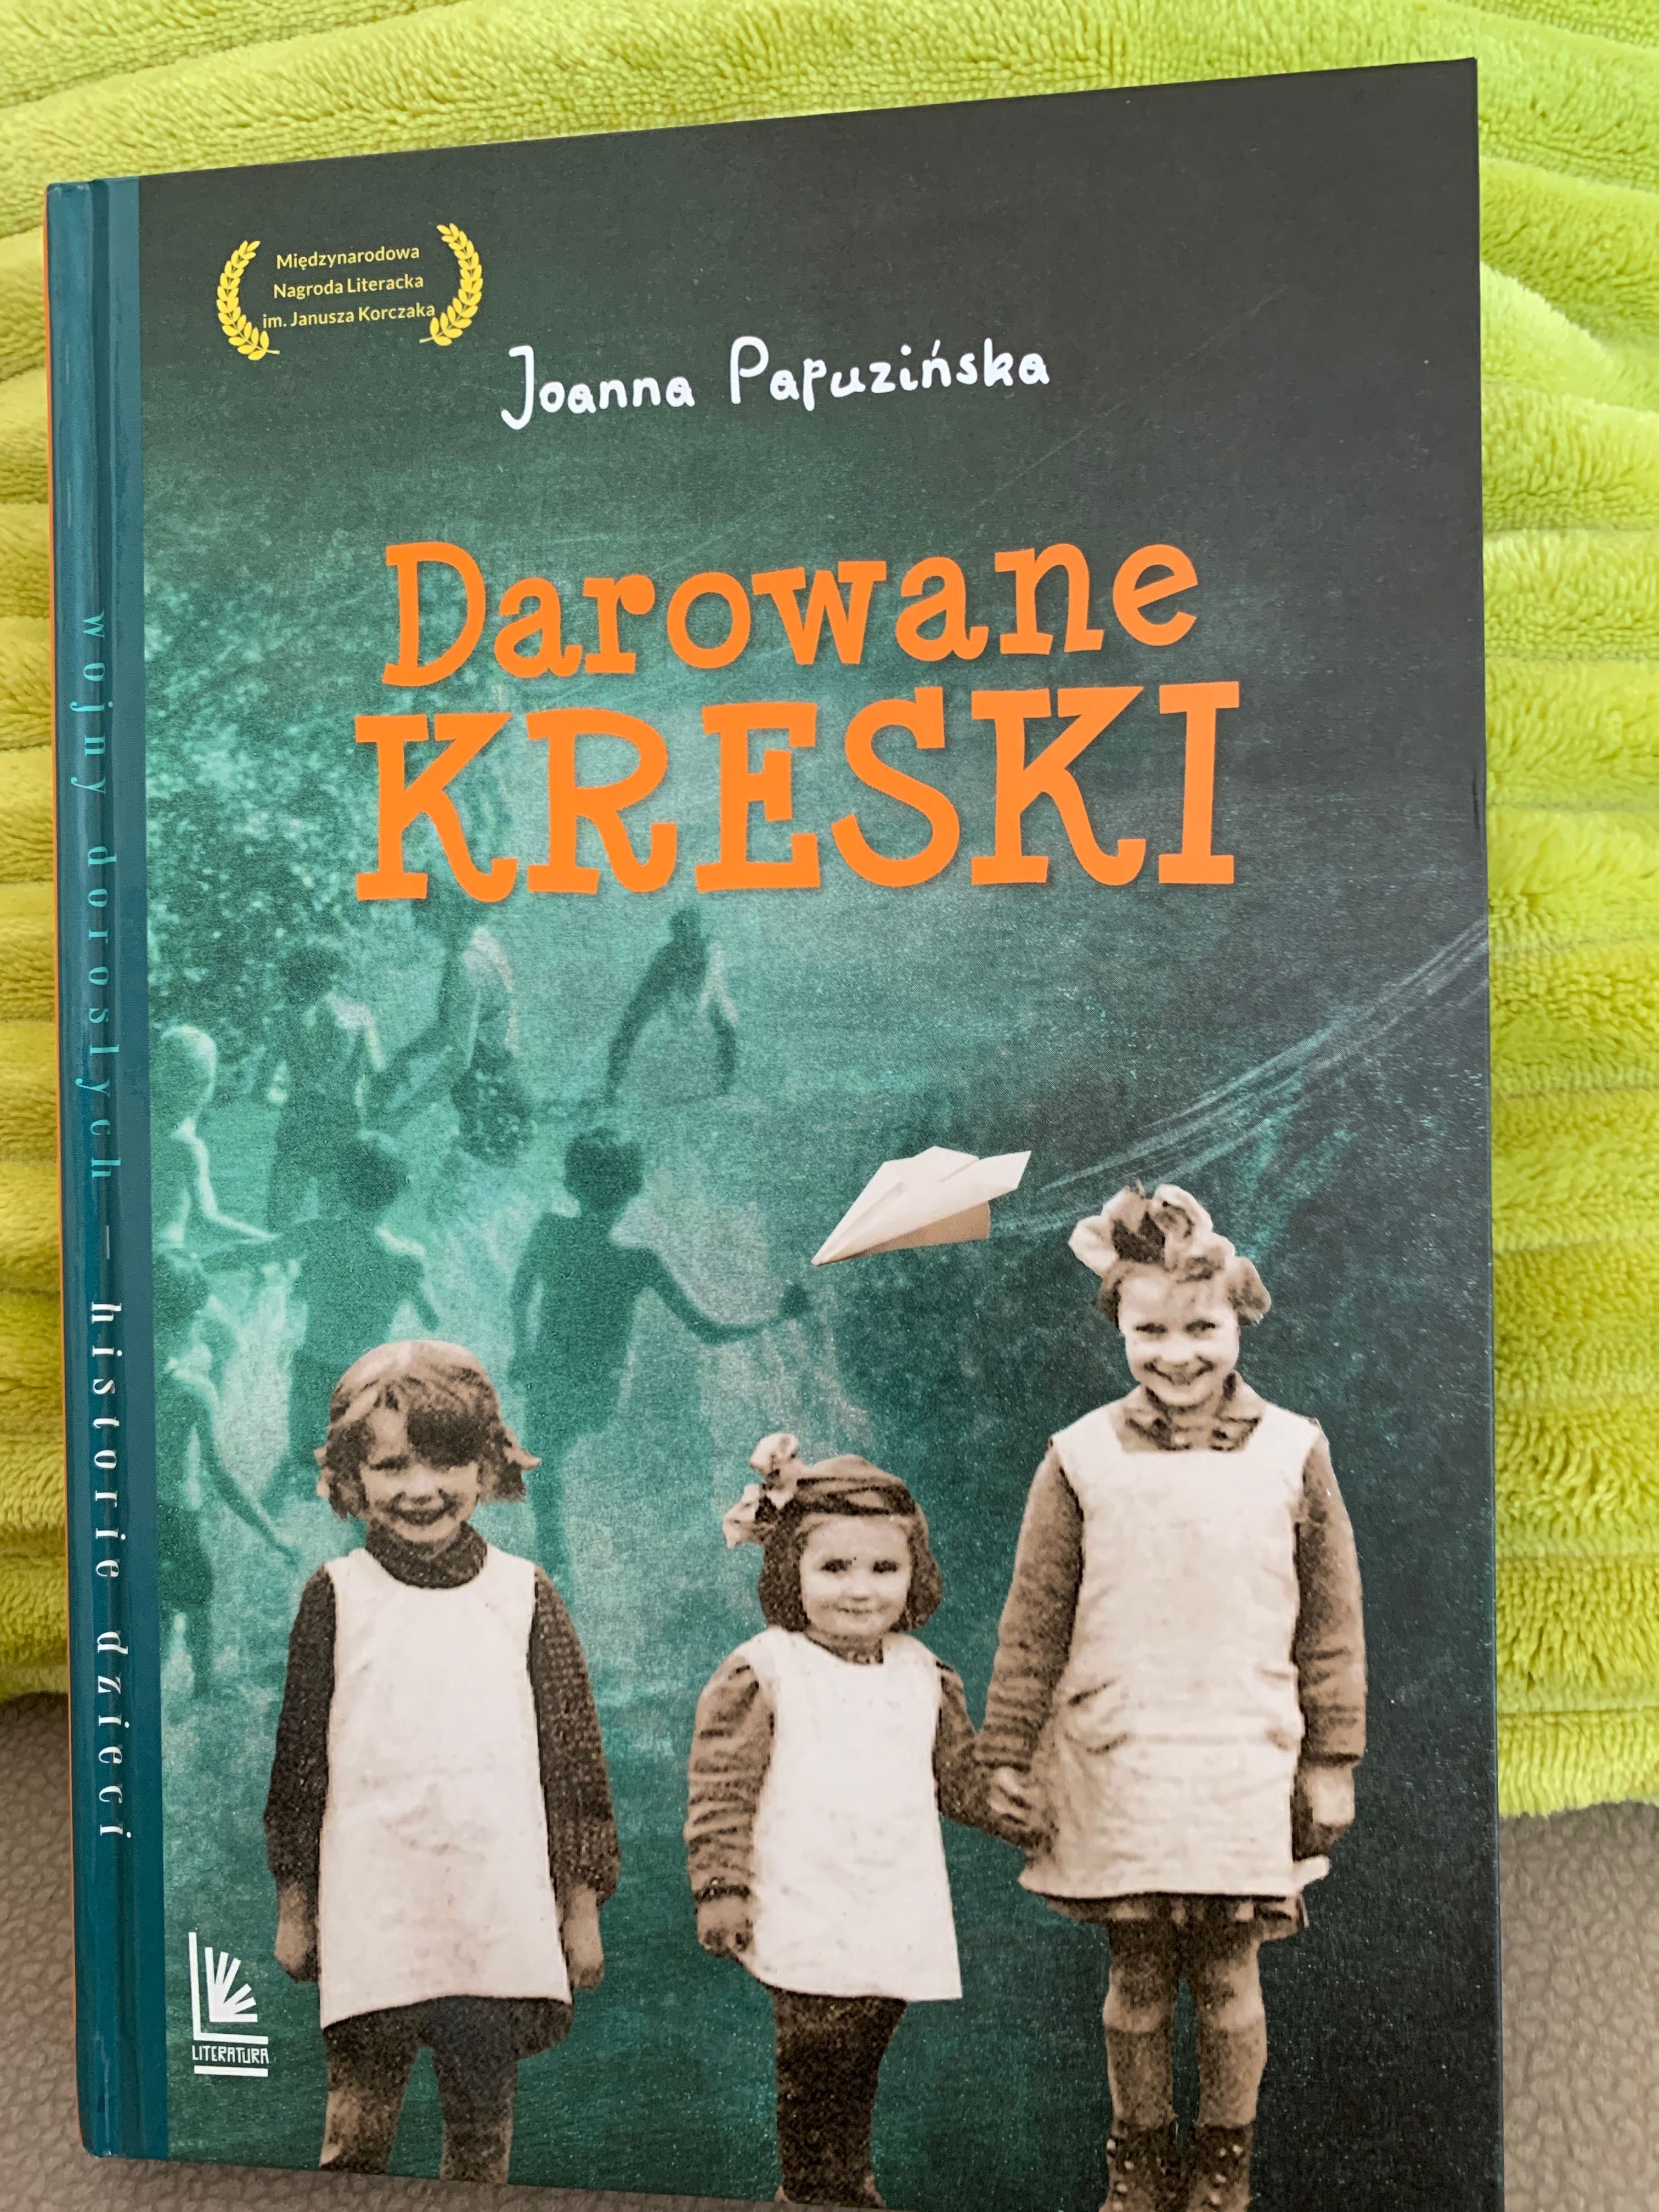 Darowane Kreski, Joanna Papuzińska, książka dla dzieci 9-12 lat.